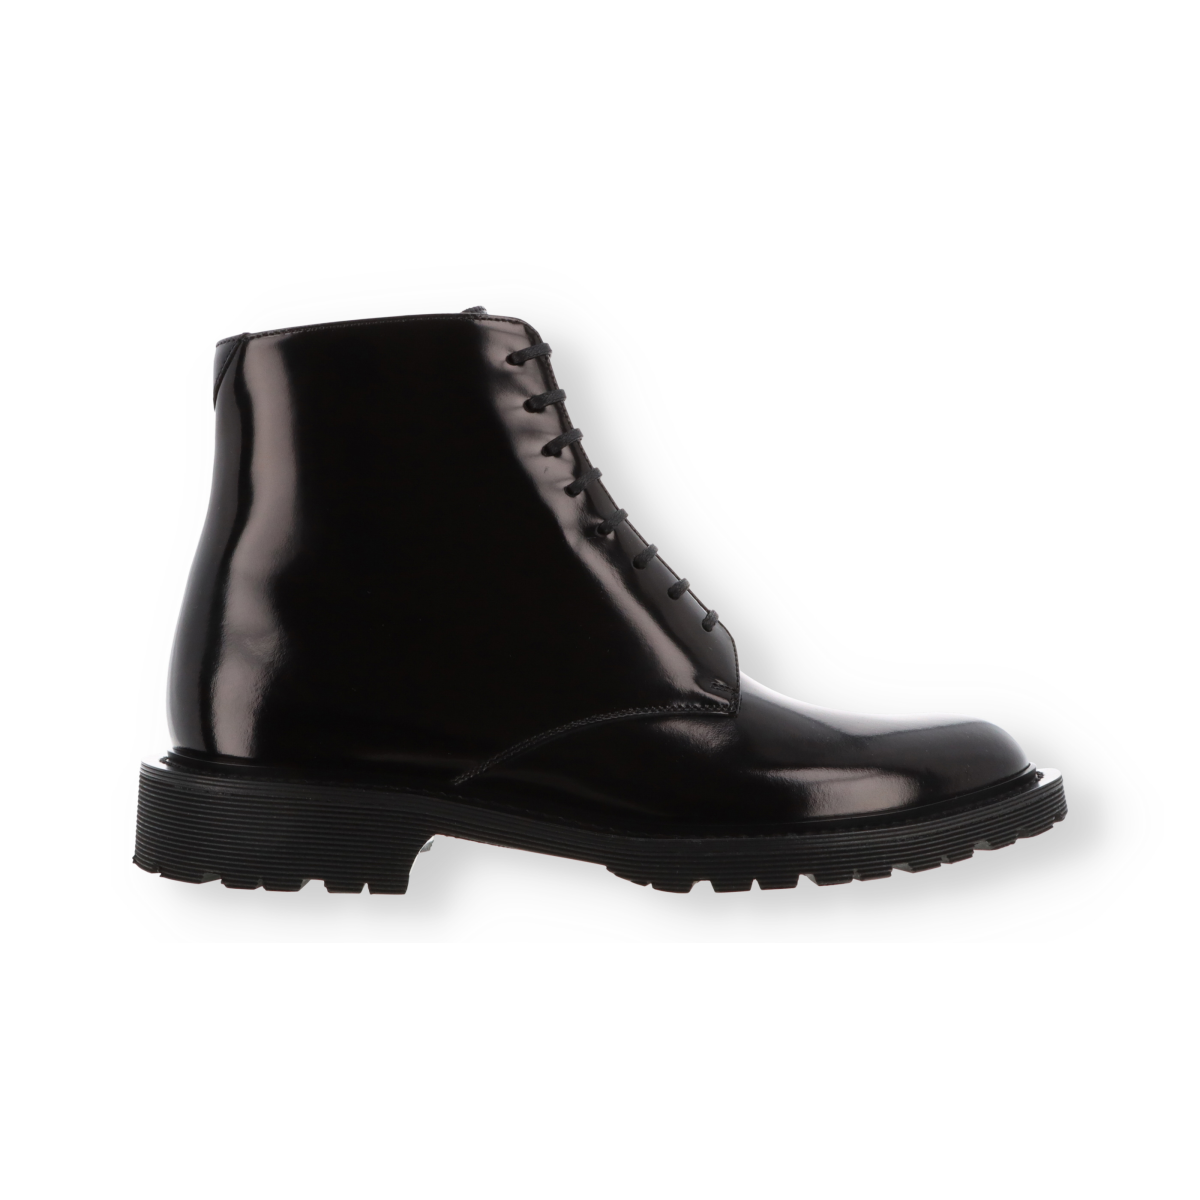 Shiny Leather Boots Saint Laurent